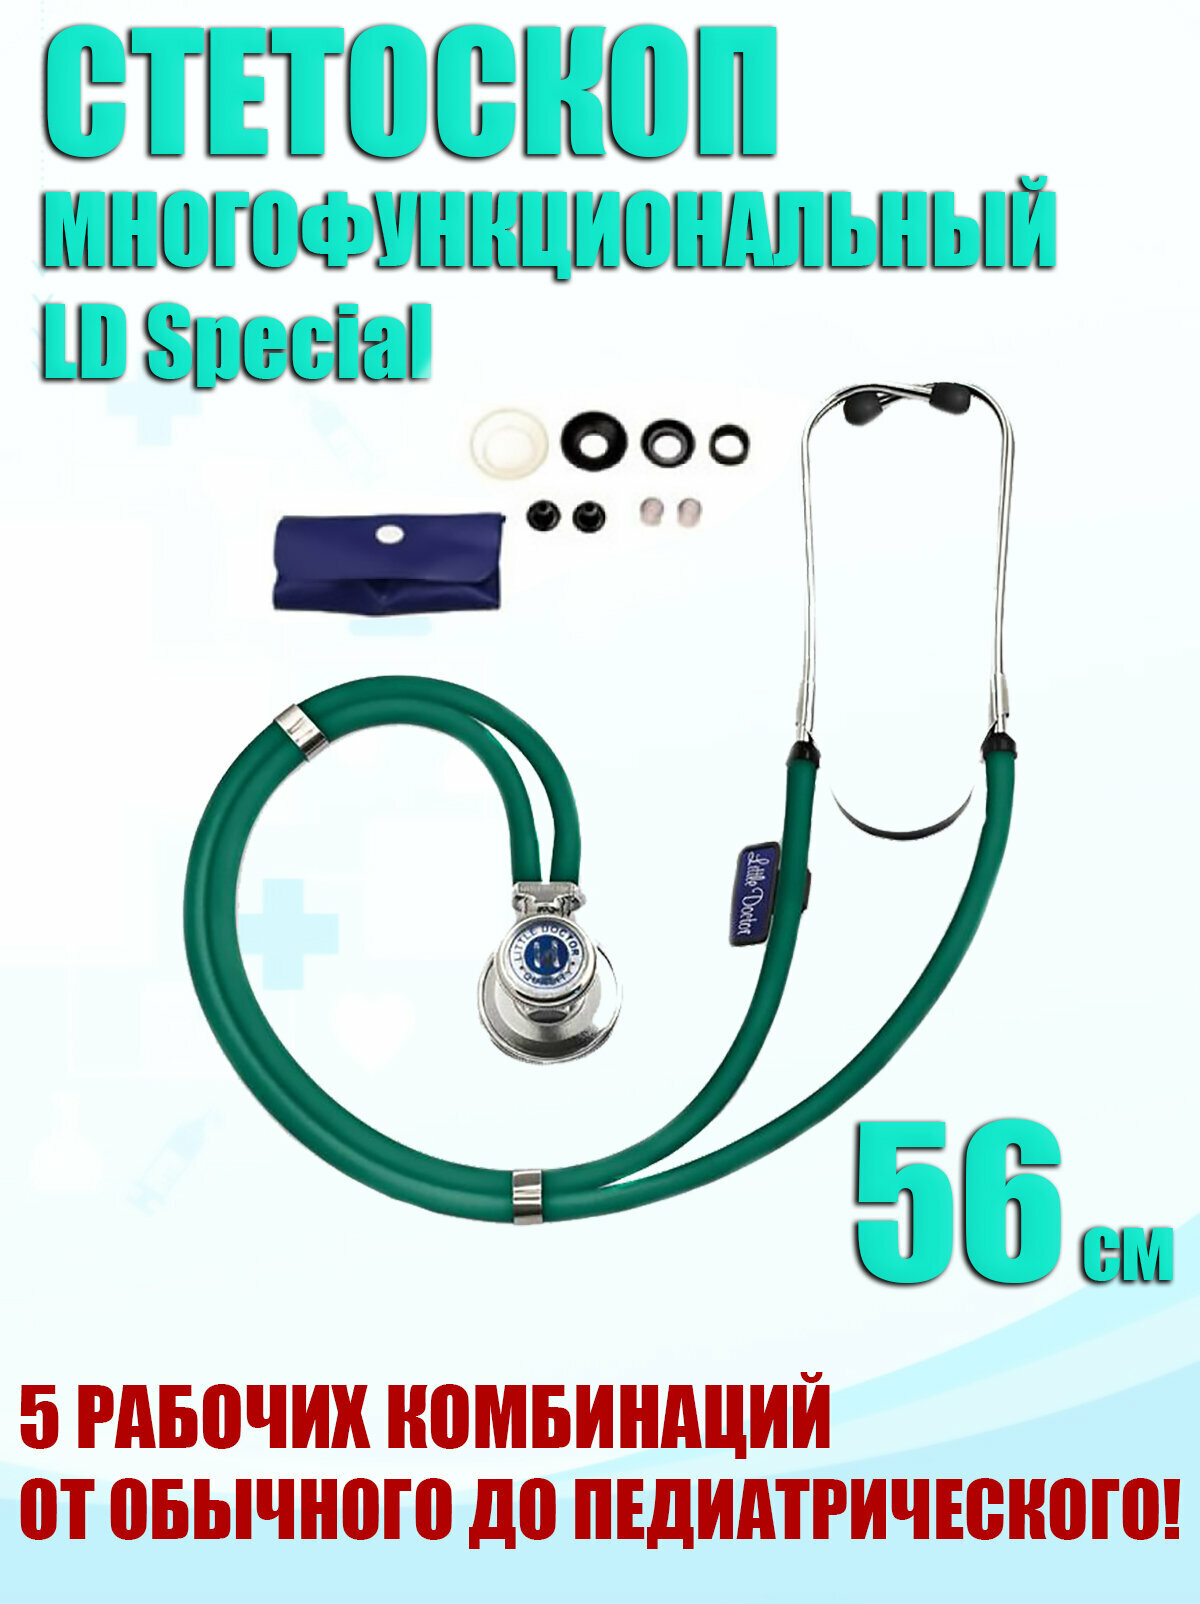 Многофункциональный медицинский стетоскоп LD Special 56см 5 рабочих комбинаций от обычного до педиатрического